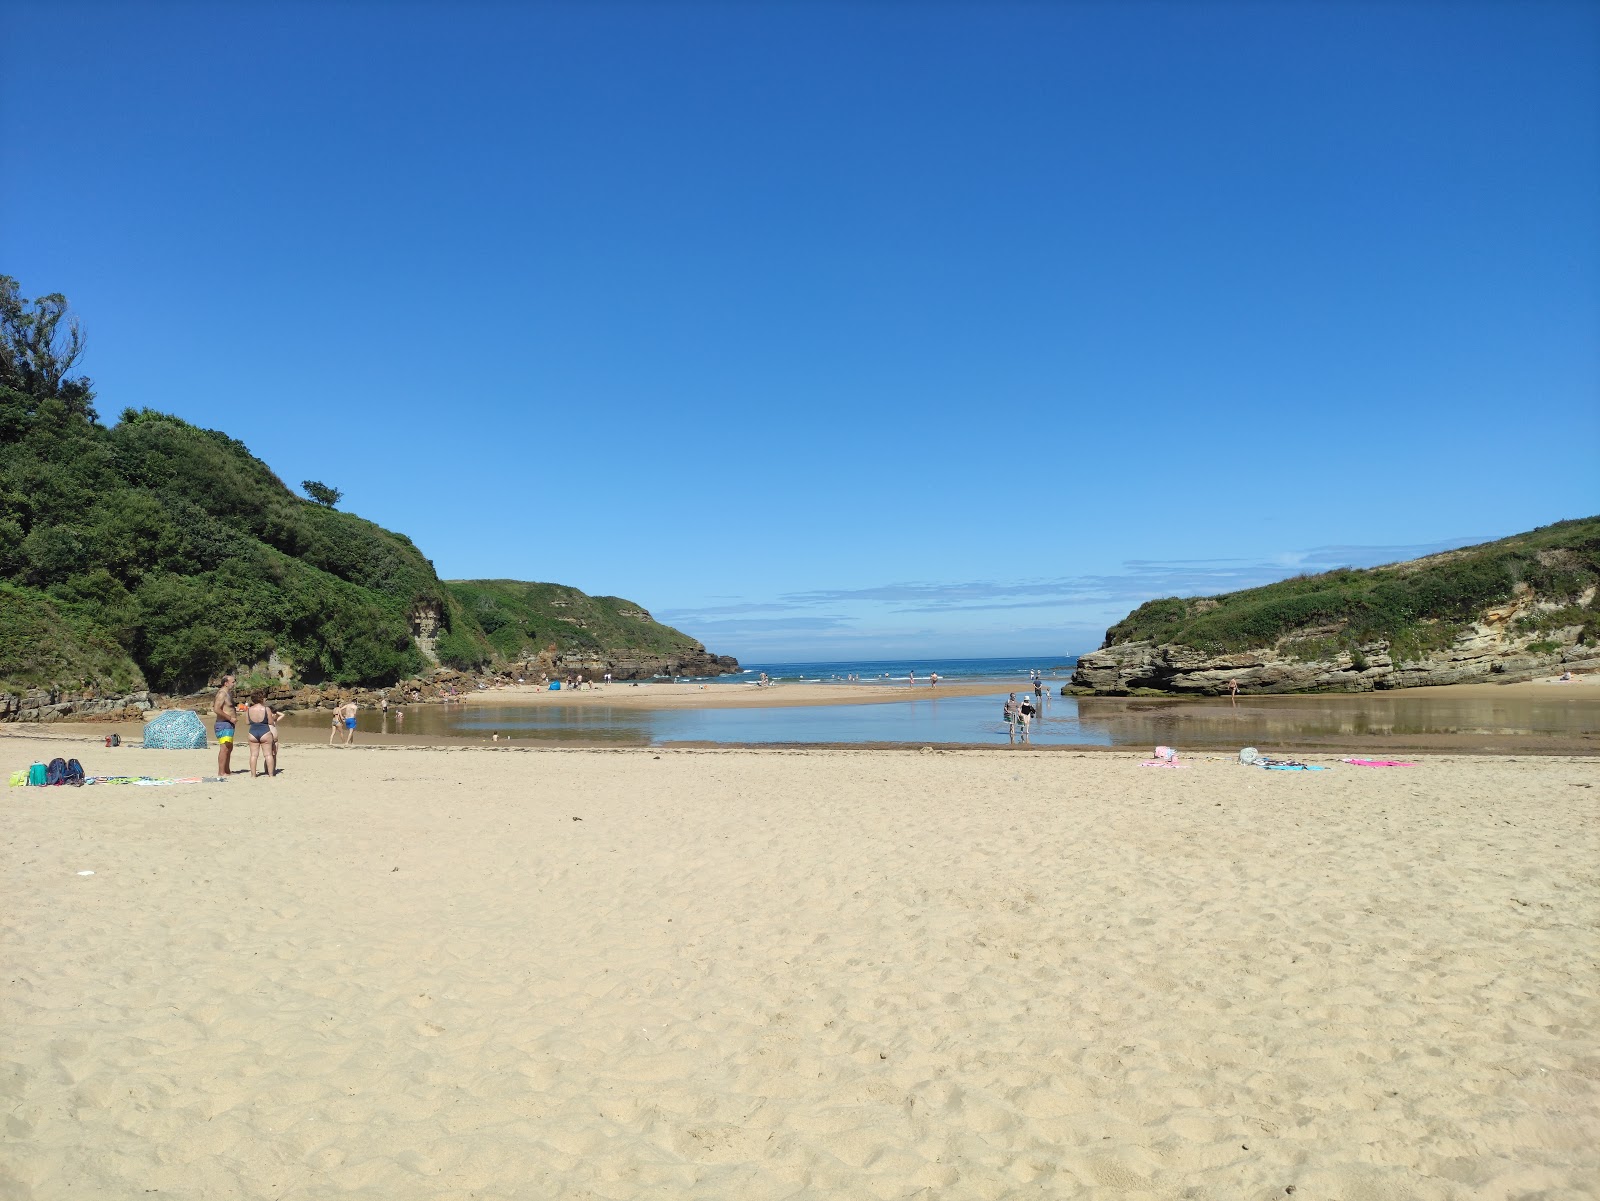 Valokuva Playa de Galizanoista. pinnalla turkoosi puhdas vesi:n kanssa